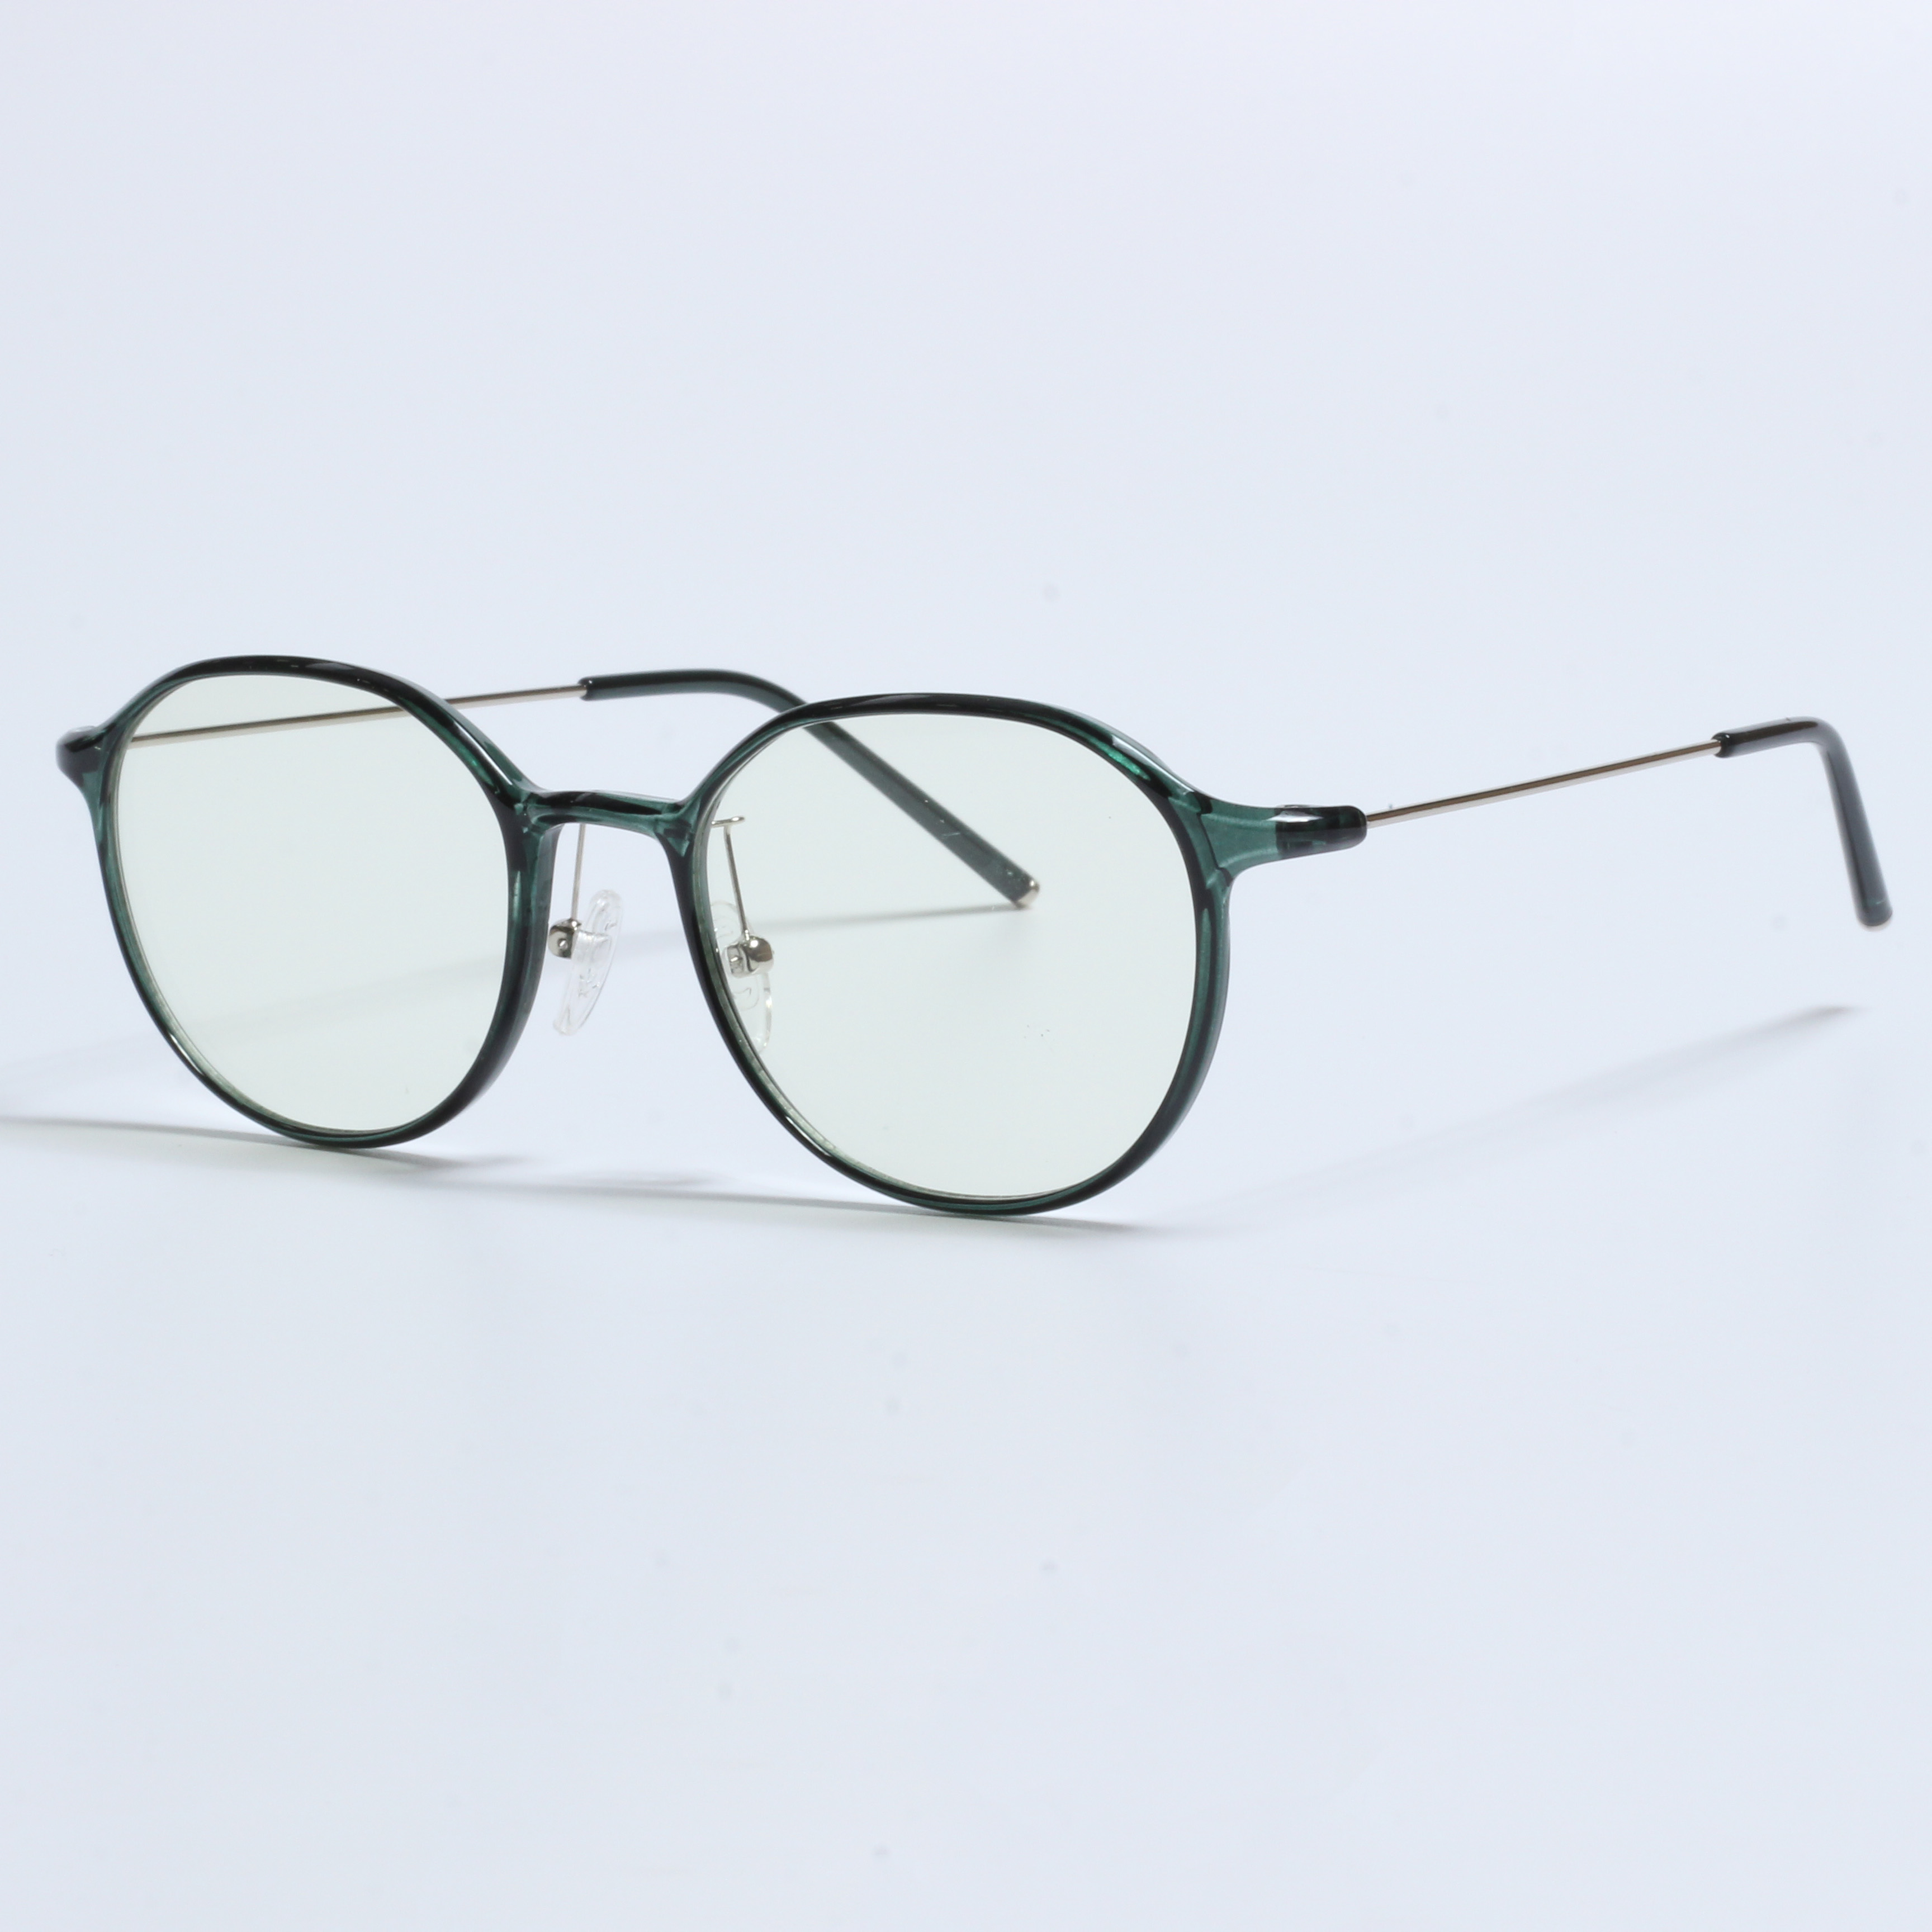 Vintage Thick Gafas Opticas De Hombres Transparent TR90 Frames (9)